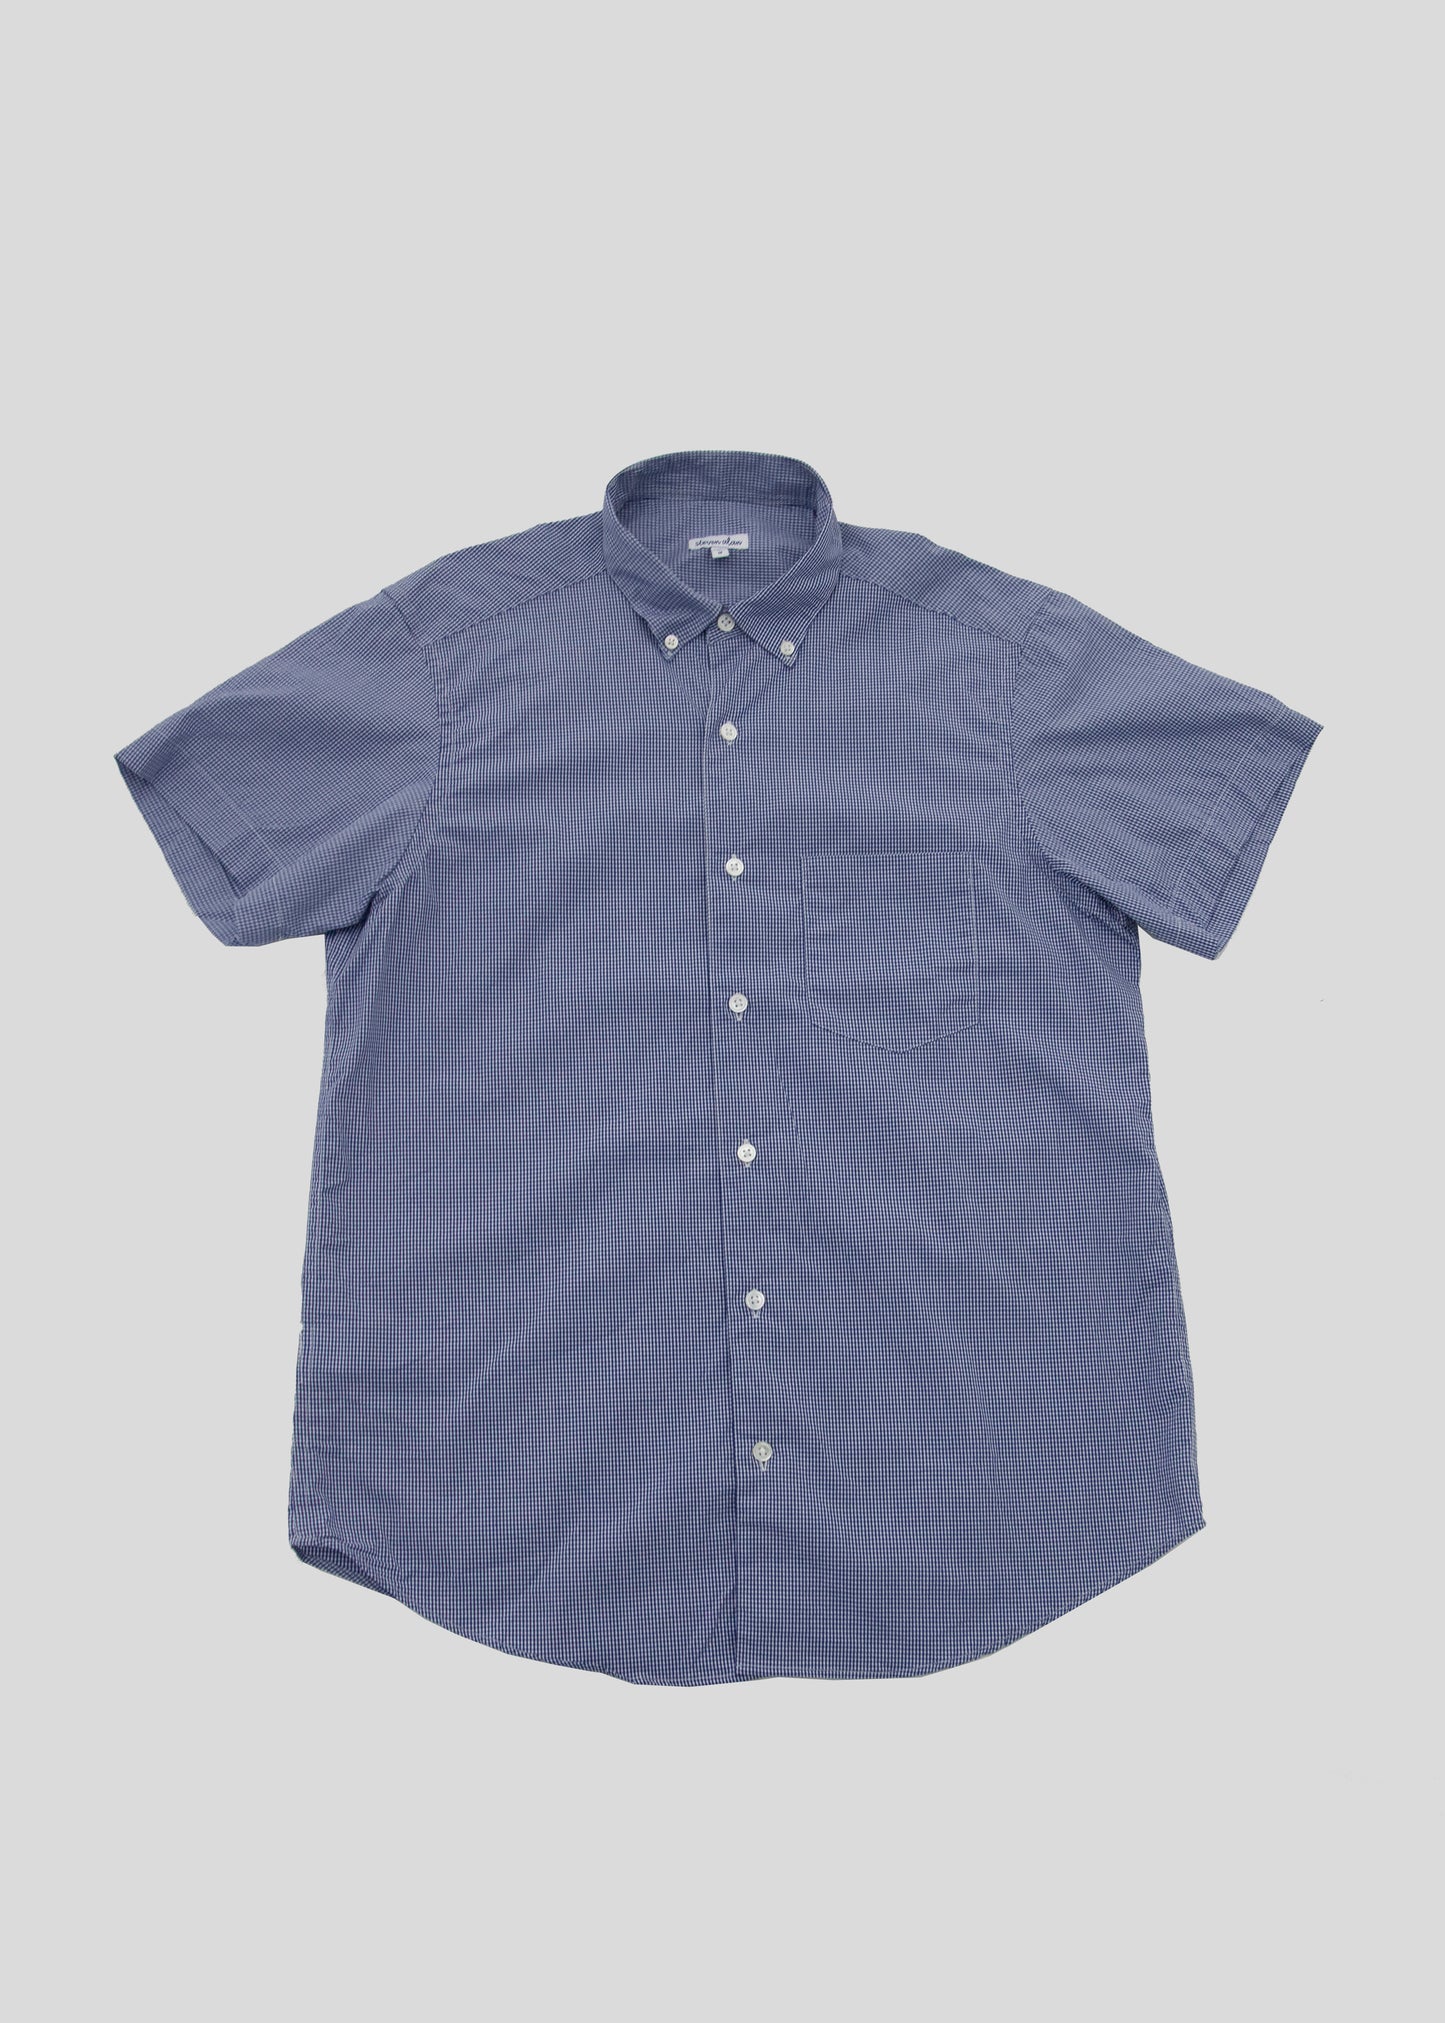 Short Sleeve Single Needle Shirt, Gingham Blue